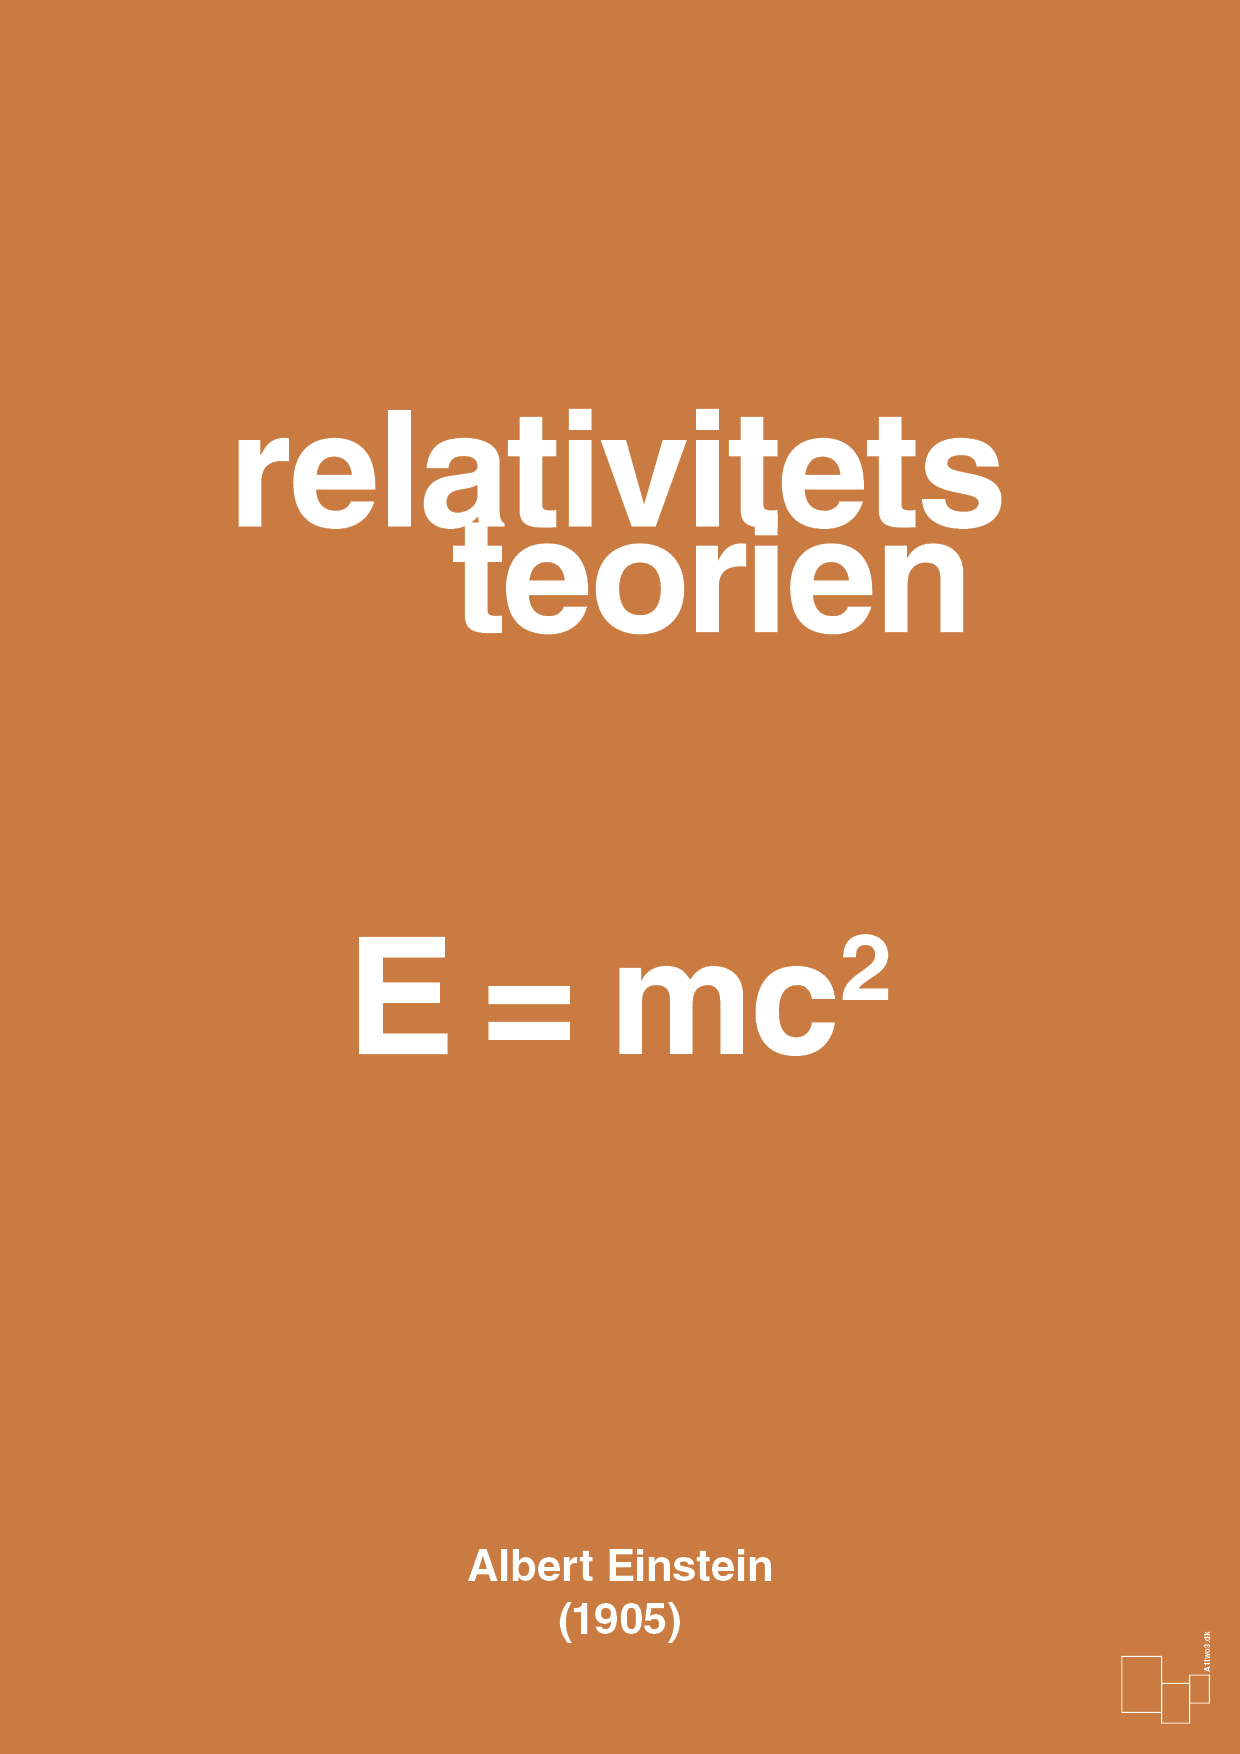 relativitets teorien - Plakat med Videnskab i Rumba Orange